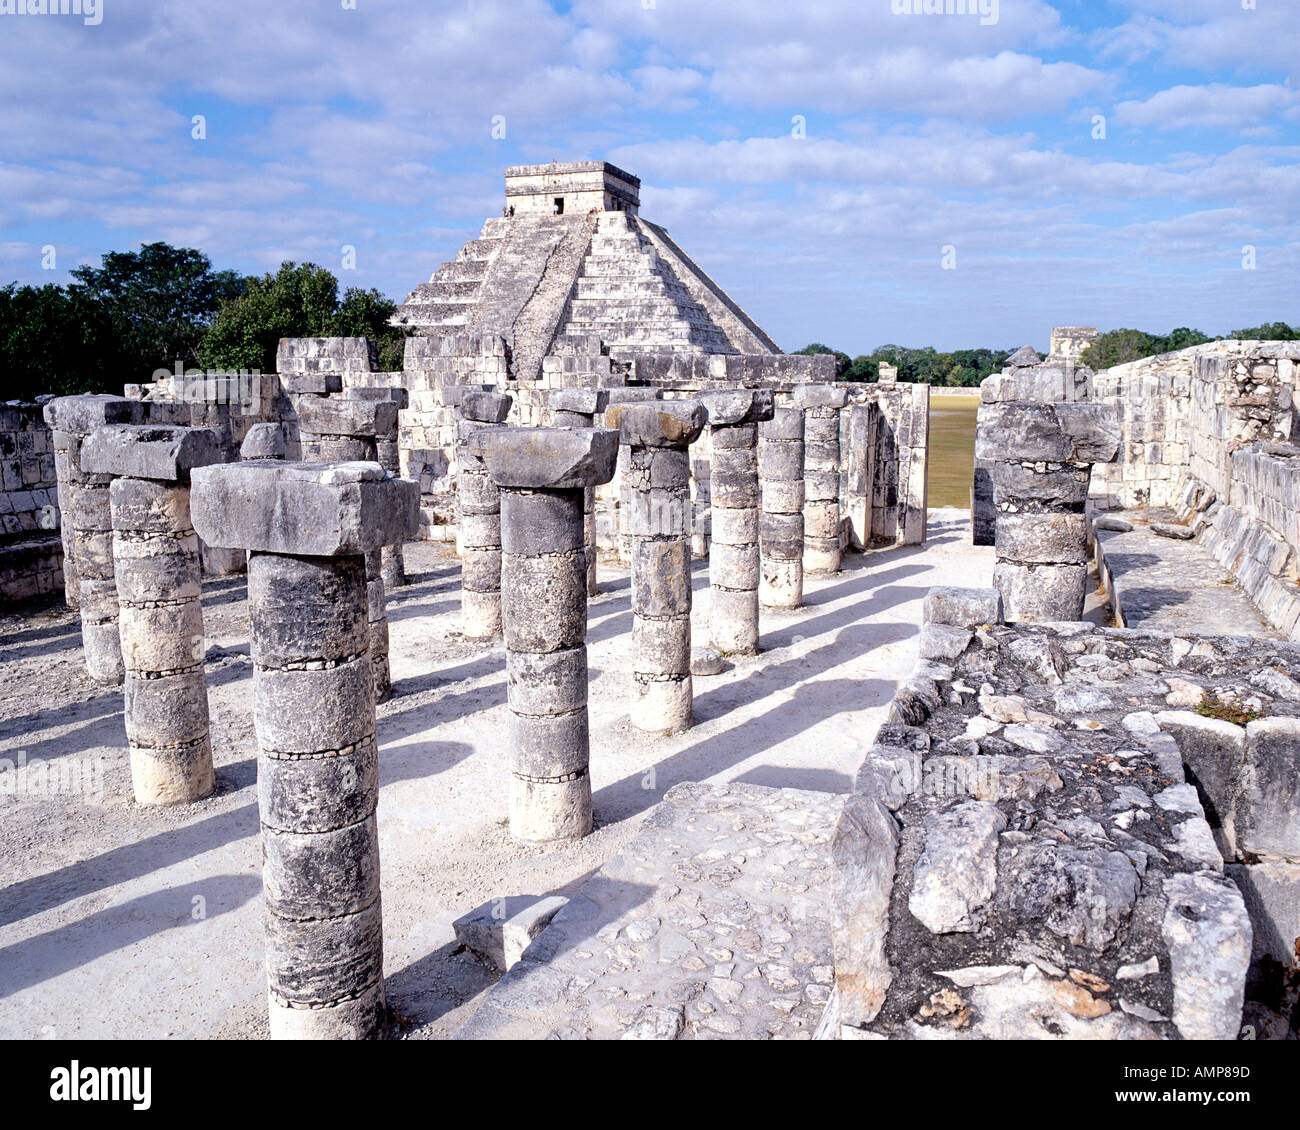 Le temple des mille colonnes et El Castillo, qui fait partie de l'historique des ruines mayas de Chichen Itza site archéologique au Mexique. Banque D'Images